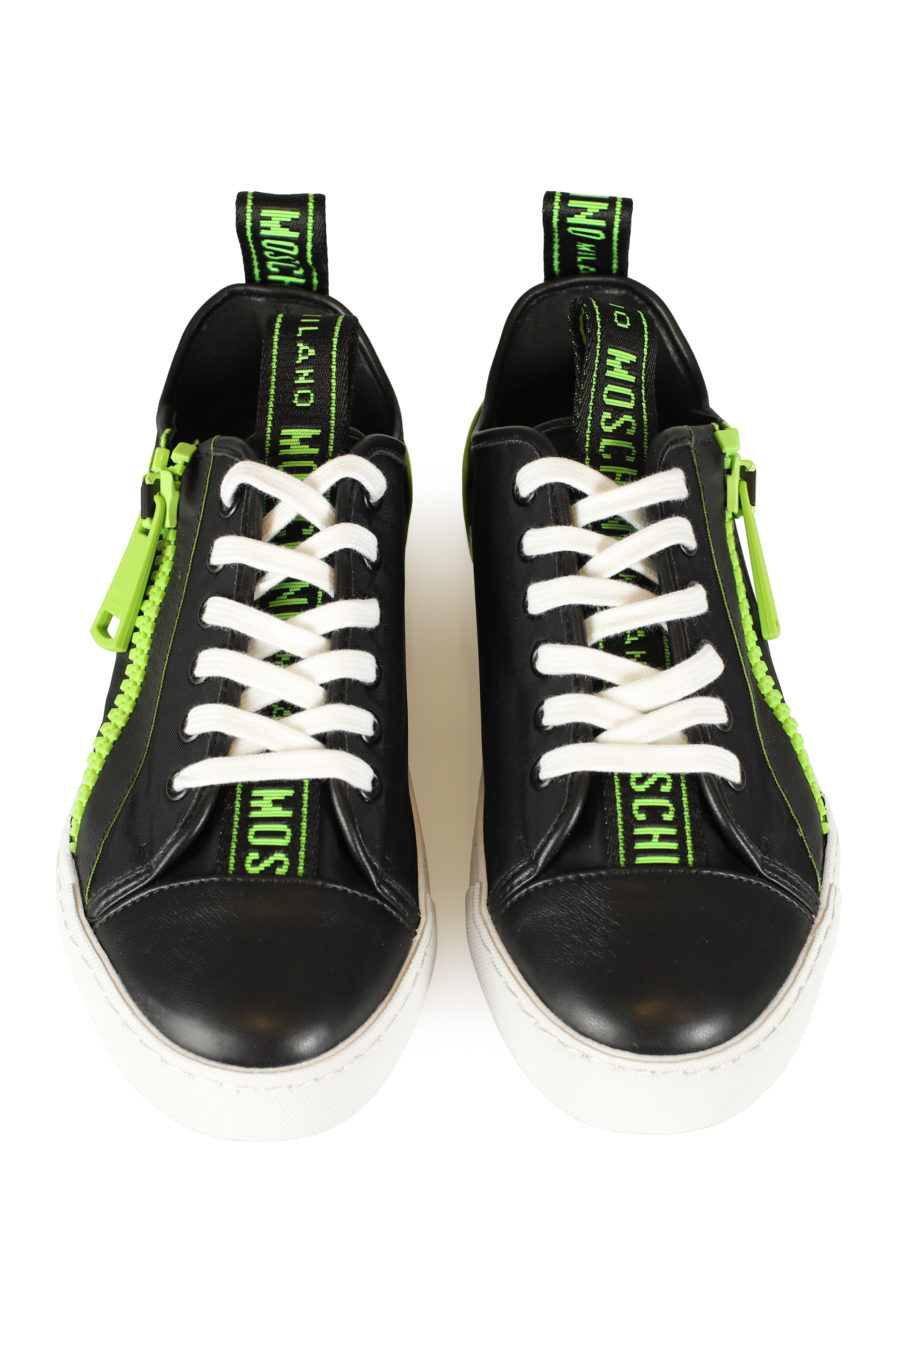 Zapatillas negras con cremallera verde "Recycle" - IMG 3469